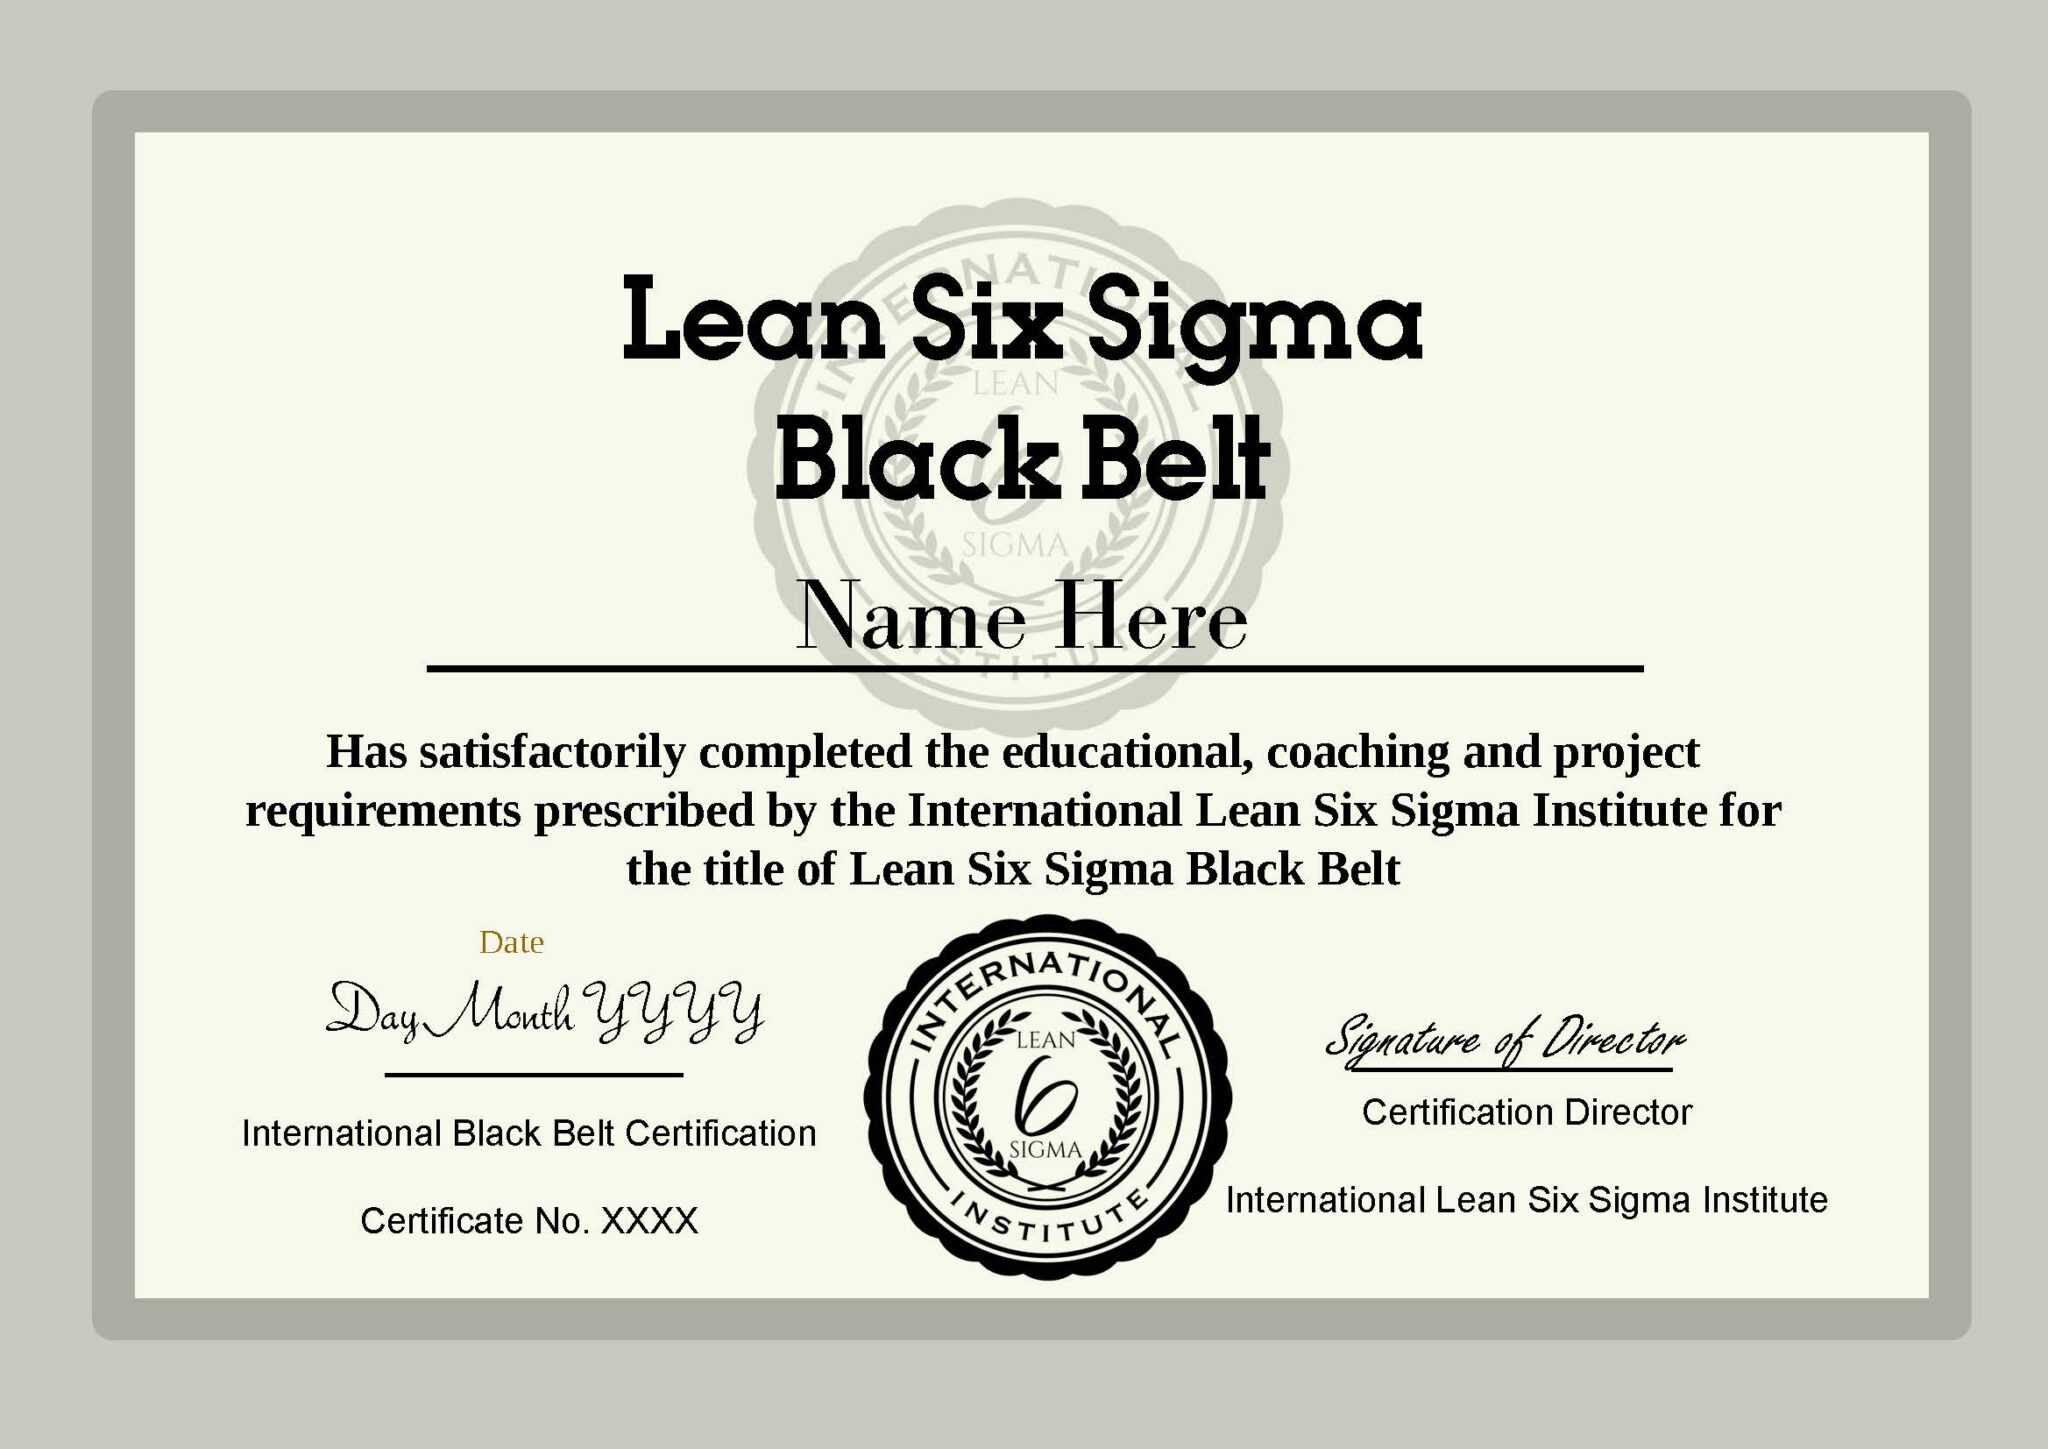 Ilssi Black Belt Cert Template 2019 throughout Green Belt Certificate